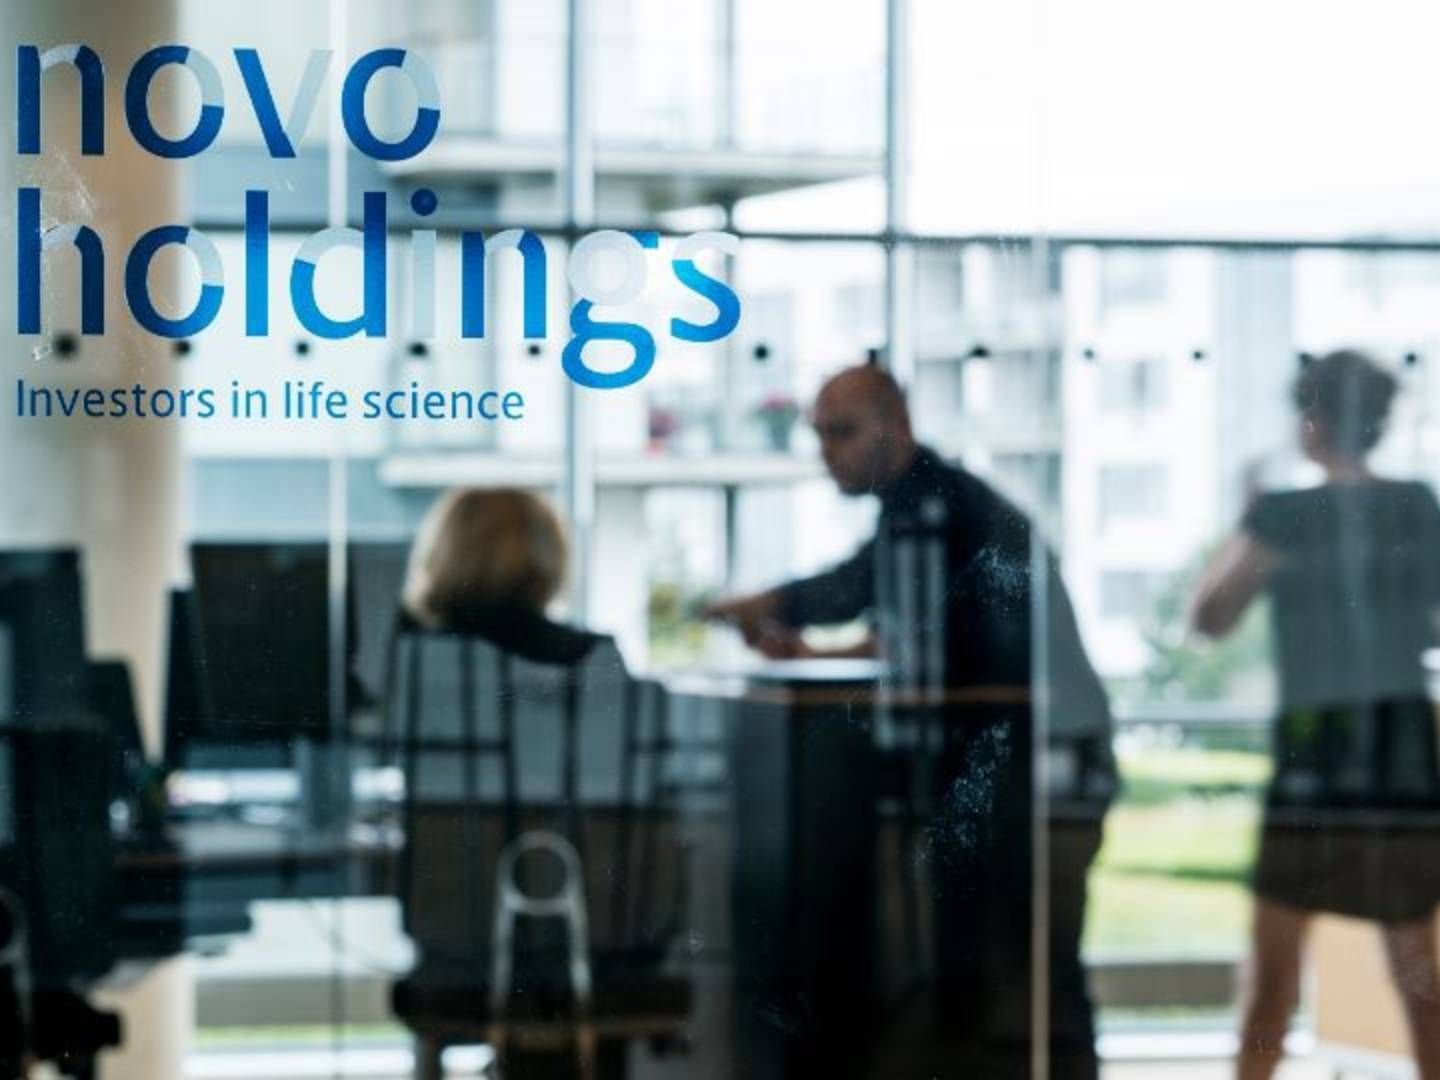 Novo Holdings øger sit sats på den tyske biotek- og kontraktforskningsvirksomhed Evotec. | Foto: Novo Holdings / PR